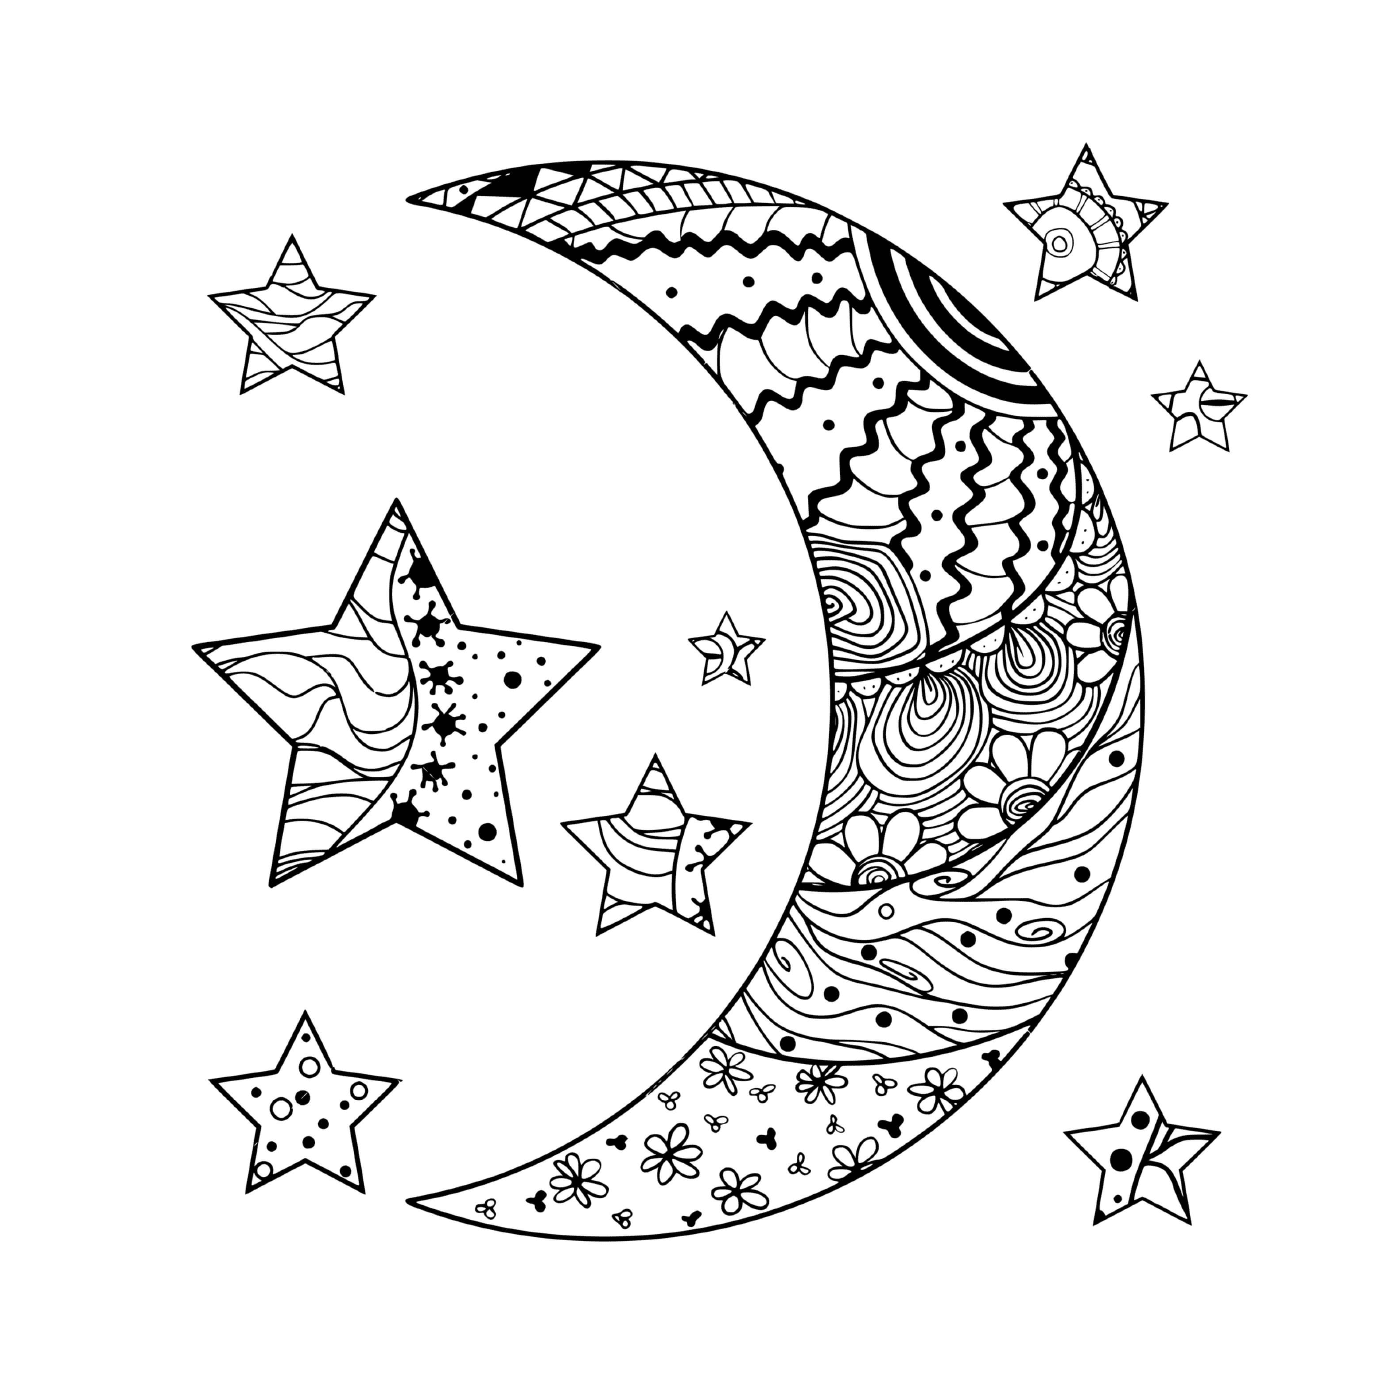  Лунное полумесяце и звезды с аббревиатурой 